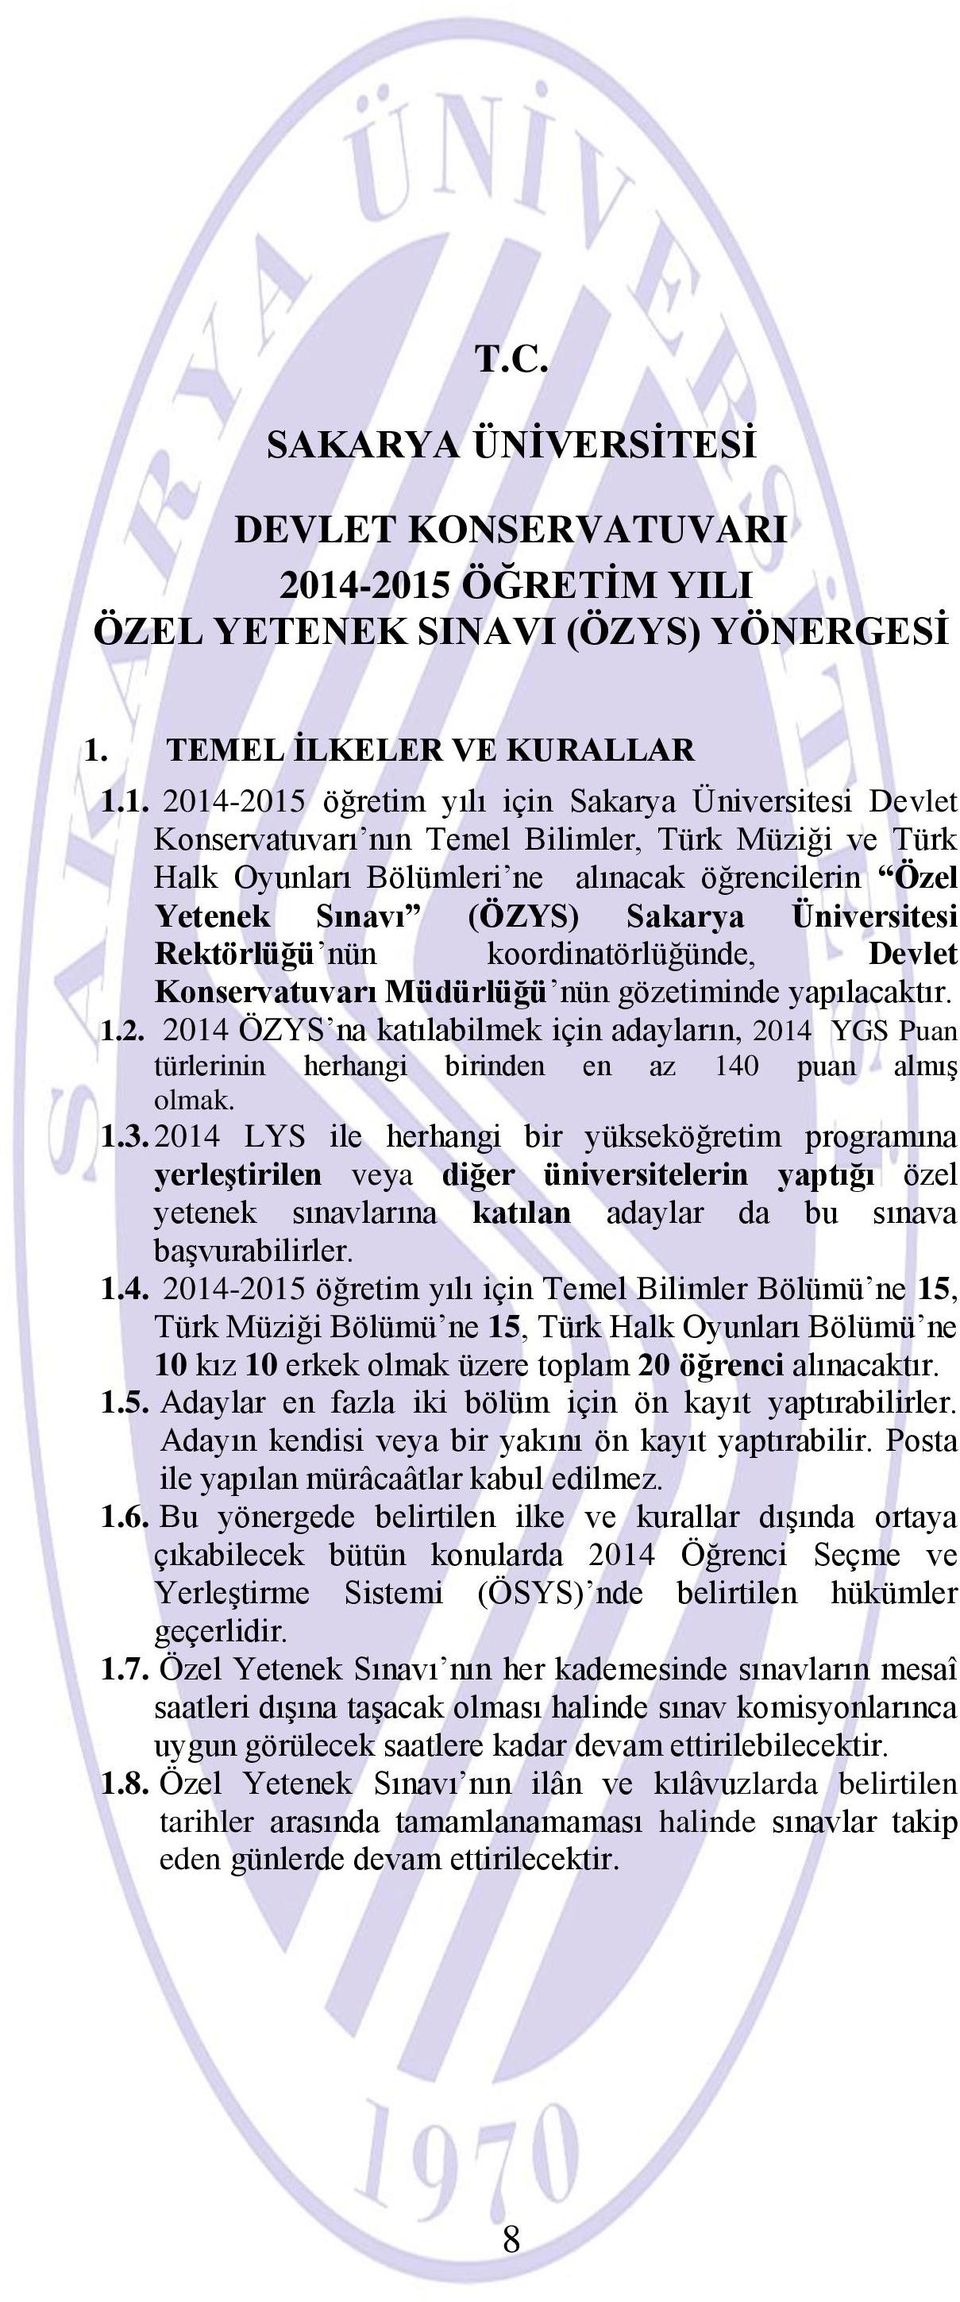 Türk Halk Oyunları Bölümleri ne alınacak öğrencilerin Özel Yetenek Sınavı (ÖZYS) Sakarya Üniversitesi Rektörlüğü nün koordinatörlüğünde, Devlet Konservatuvarı Müdürlüğü nün gözetiminde yapılacaktır.